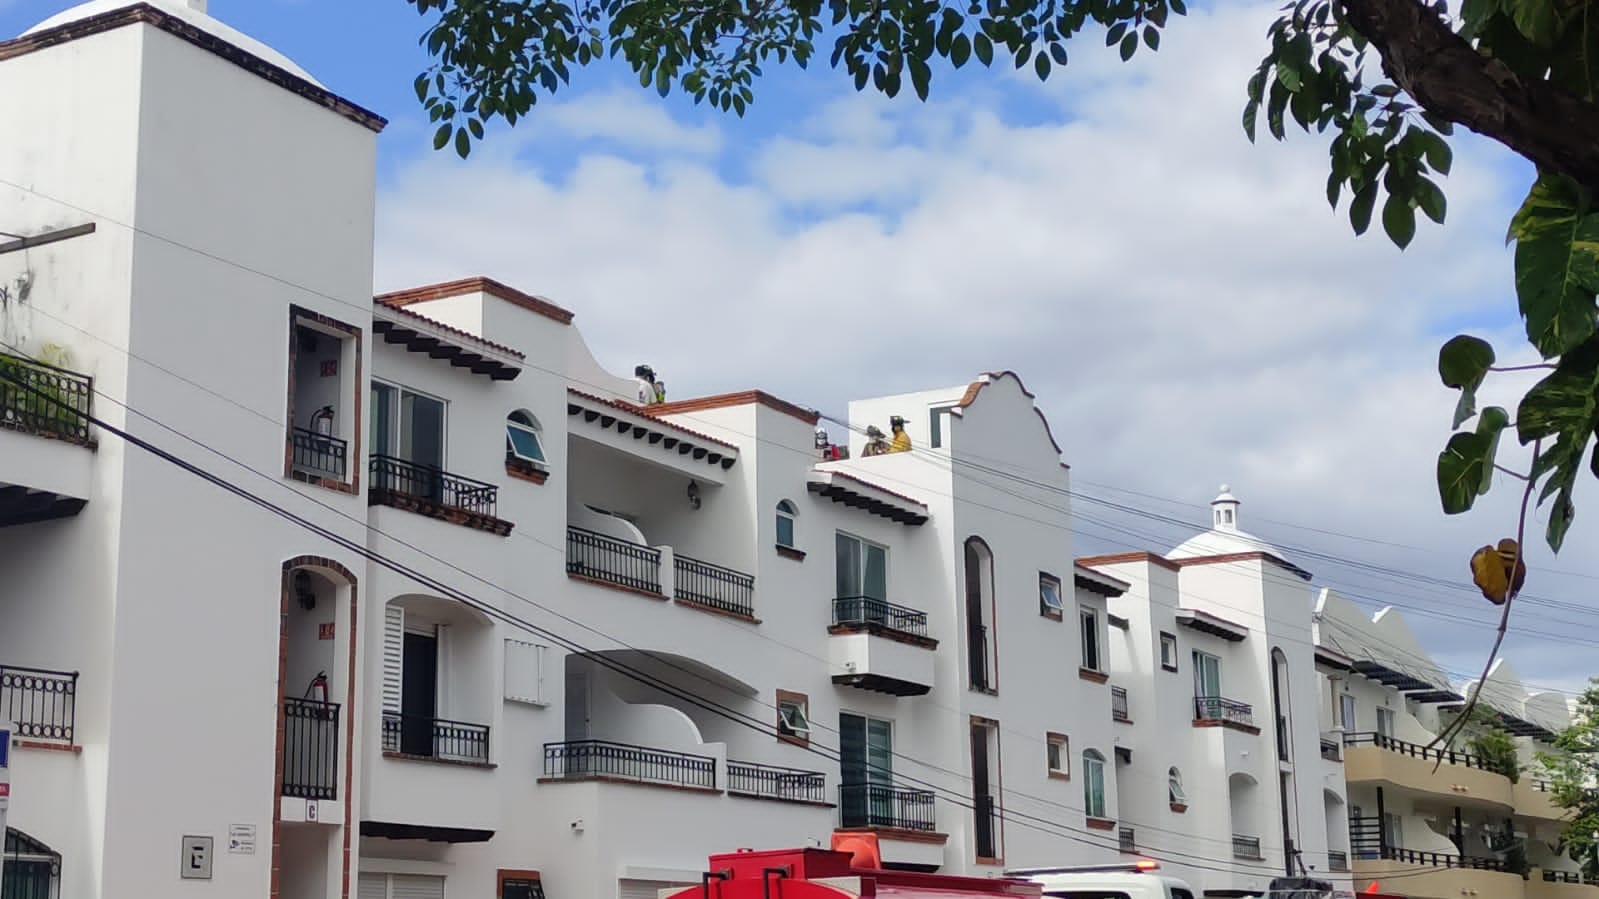 Explosión de bomba de agua genera pánico en una vivienda en Playa del Carmen